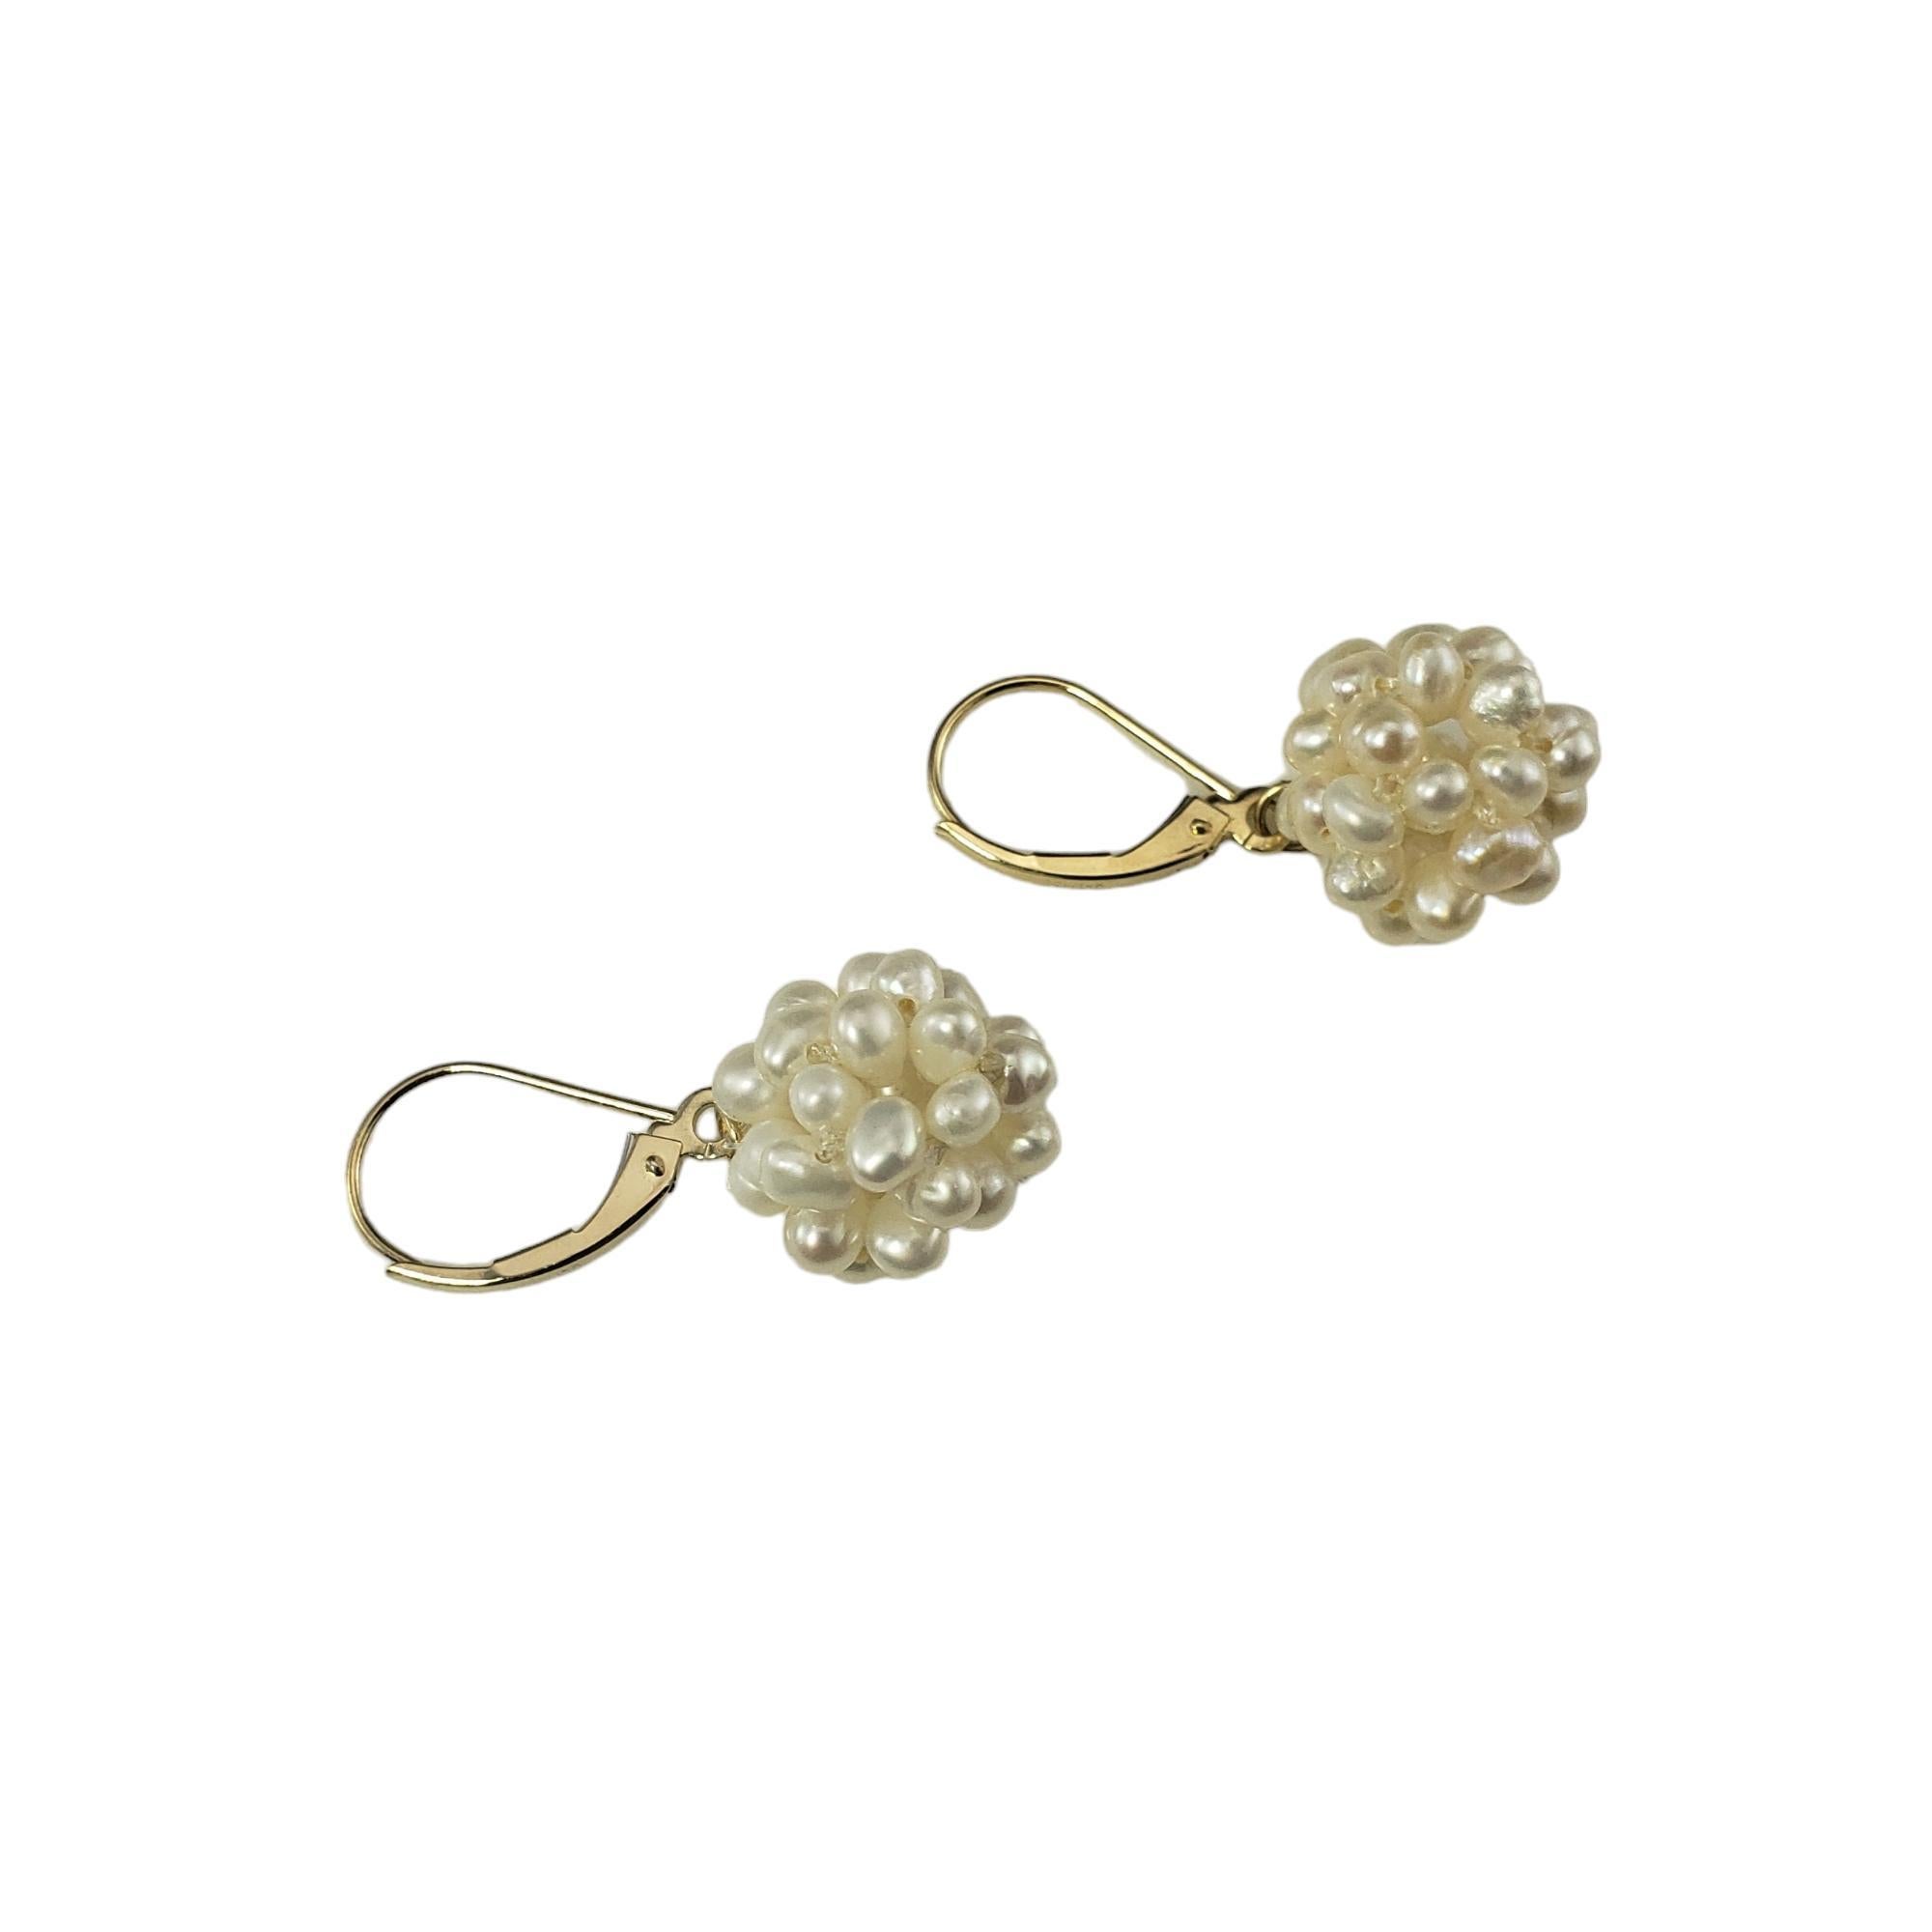 Vintage 14K Gelbgold Süßwasser Perlen Cluster Ohrringe-

Diese eleganten Ohrringe sind mit einem hübschen Büschel Süßwasserperlen in klassischem 14-karätigem Gelbgold gefasst.

Größe: 30 mm x 13 mm

Gestempelt:  JCM 14K

Gewicht: 2,2 dwt. / 3,4